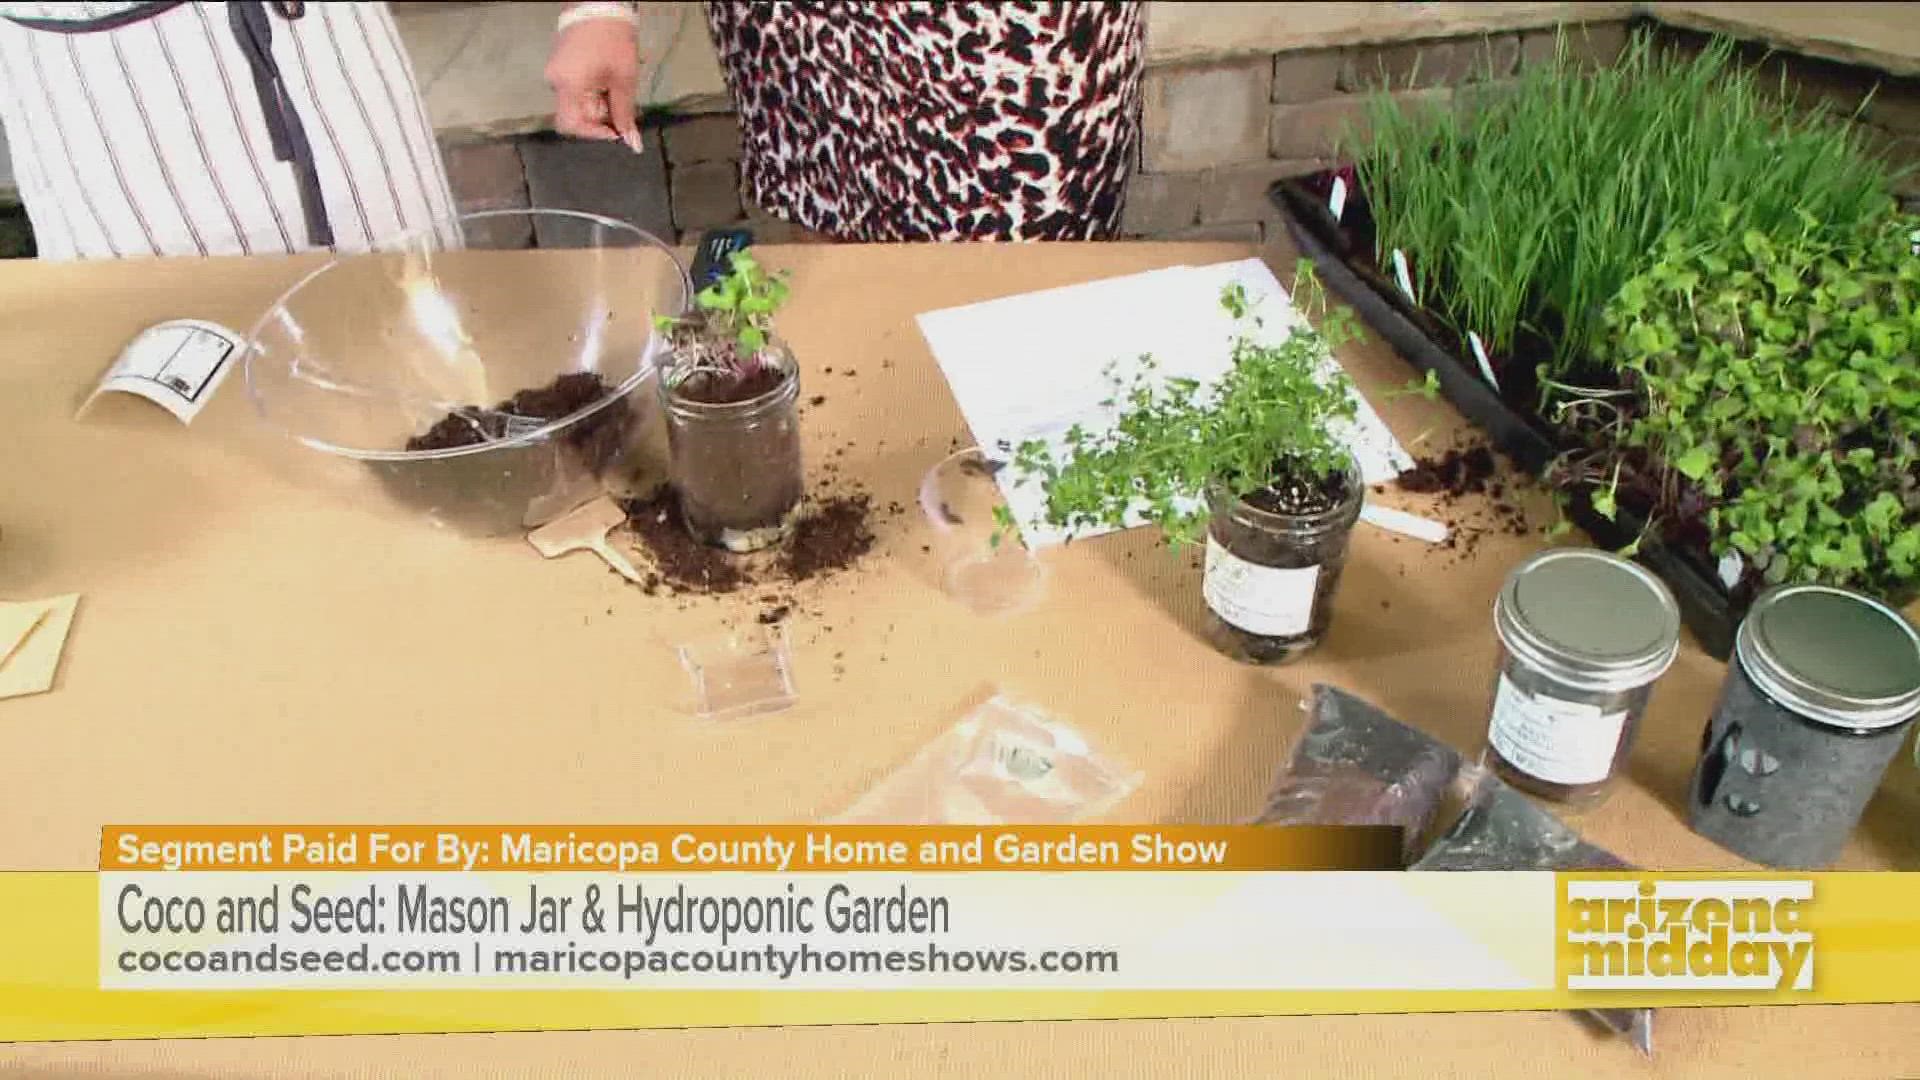 Tishana de Coco and Seed nous montre comment créer un jardin à l'aide de bocaux Mason.  Retrouvez-la au Maricopa Home & Garden Show à Westworld ce week-end.